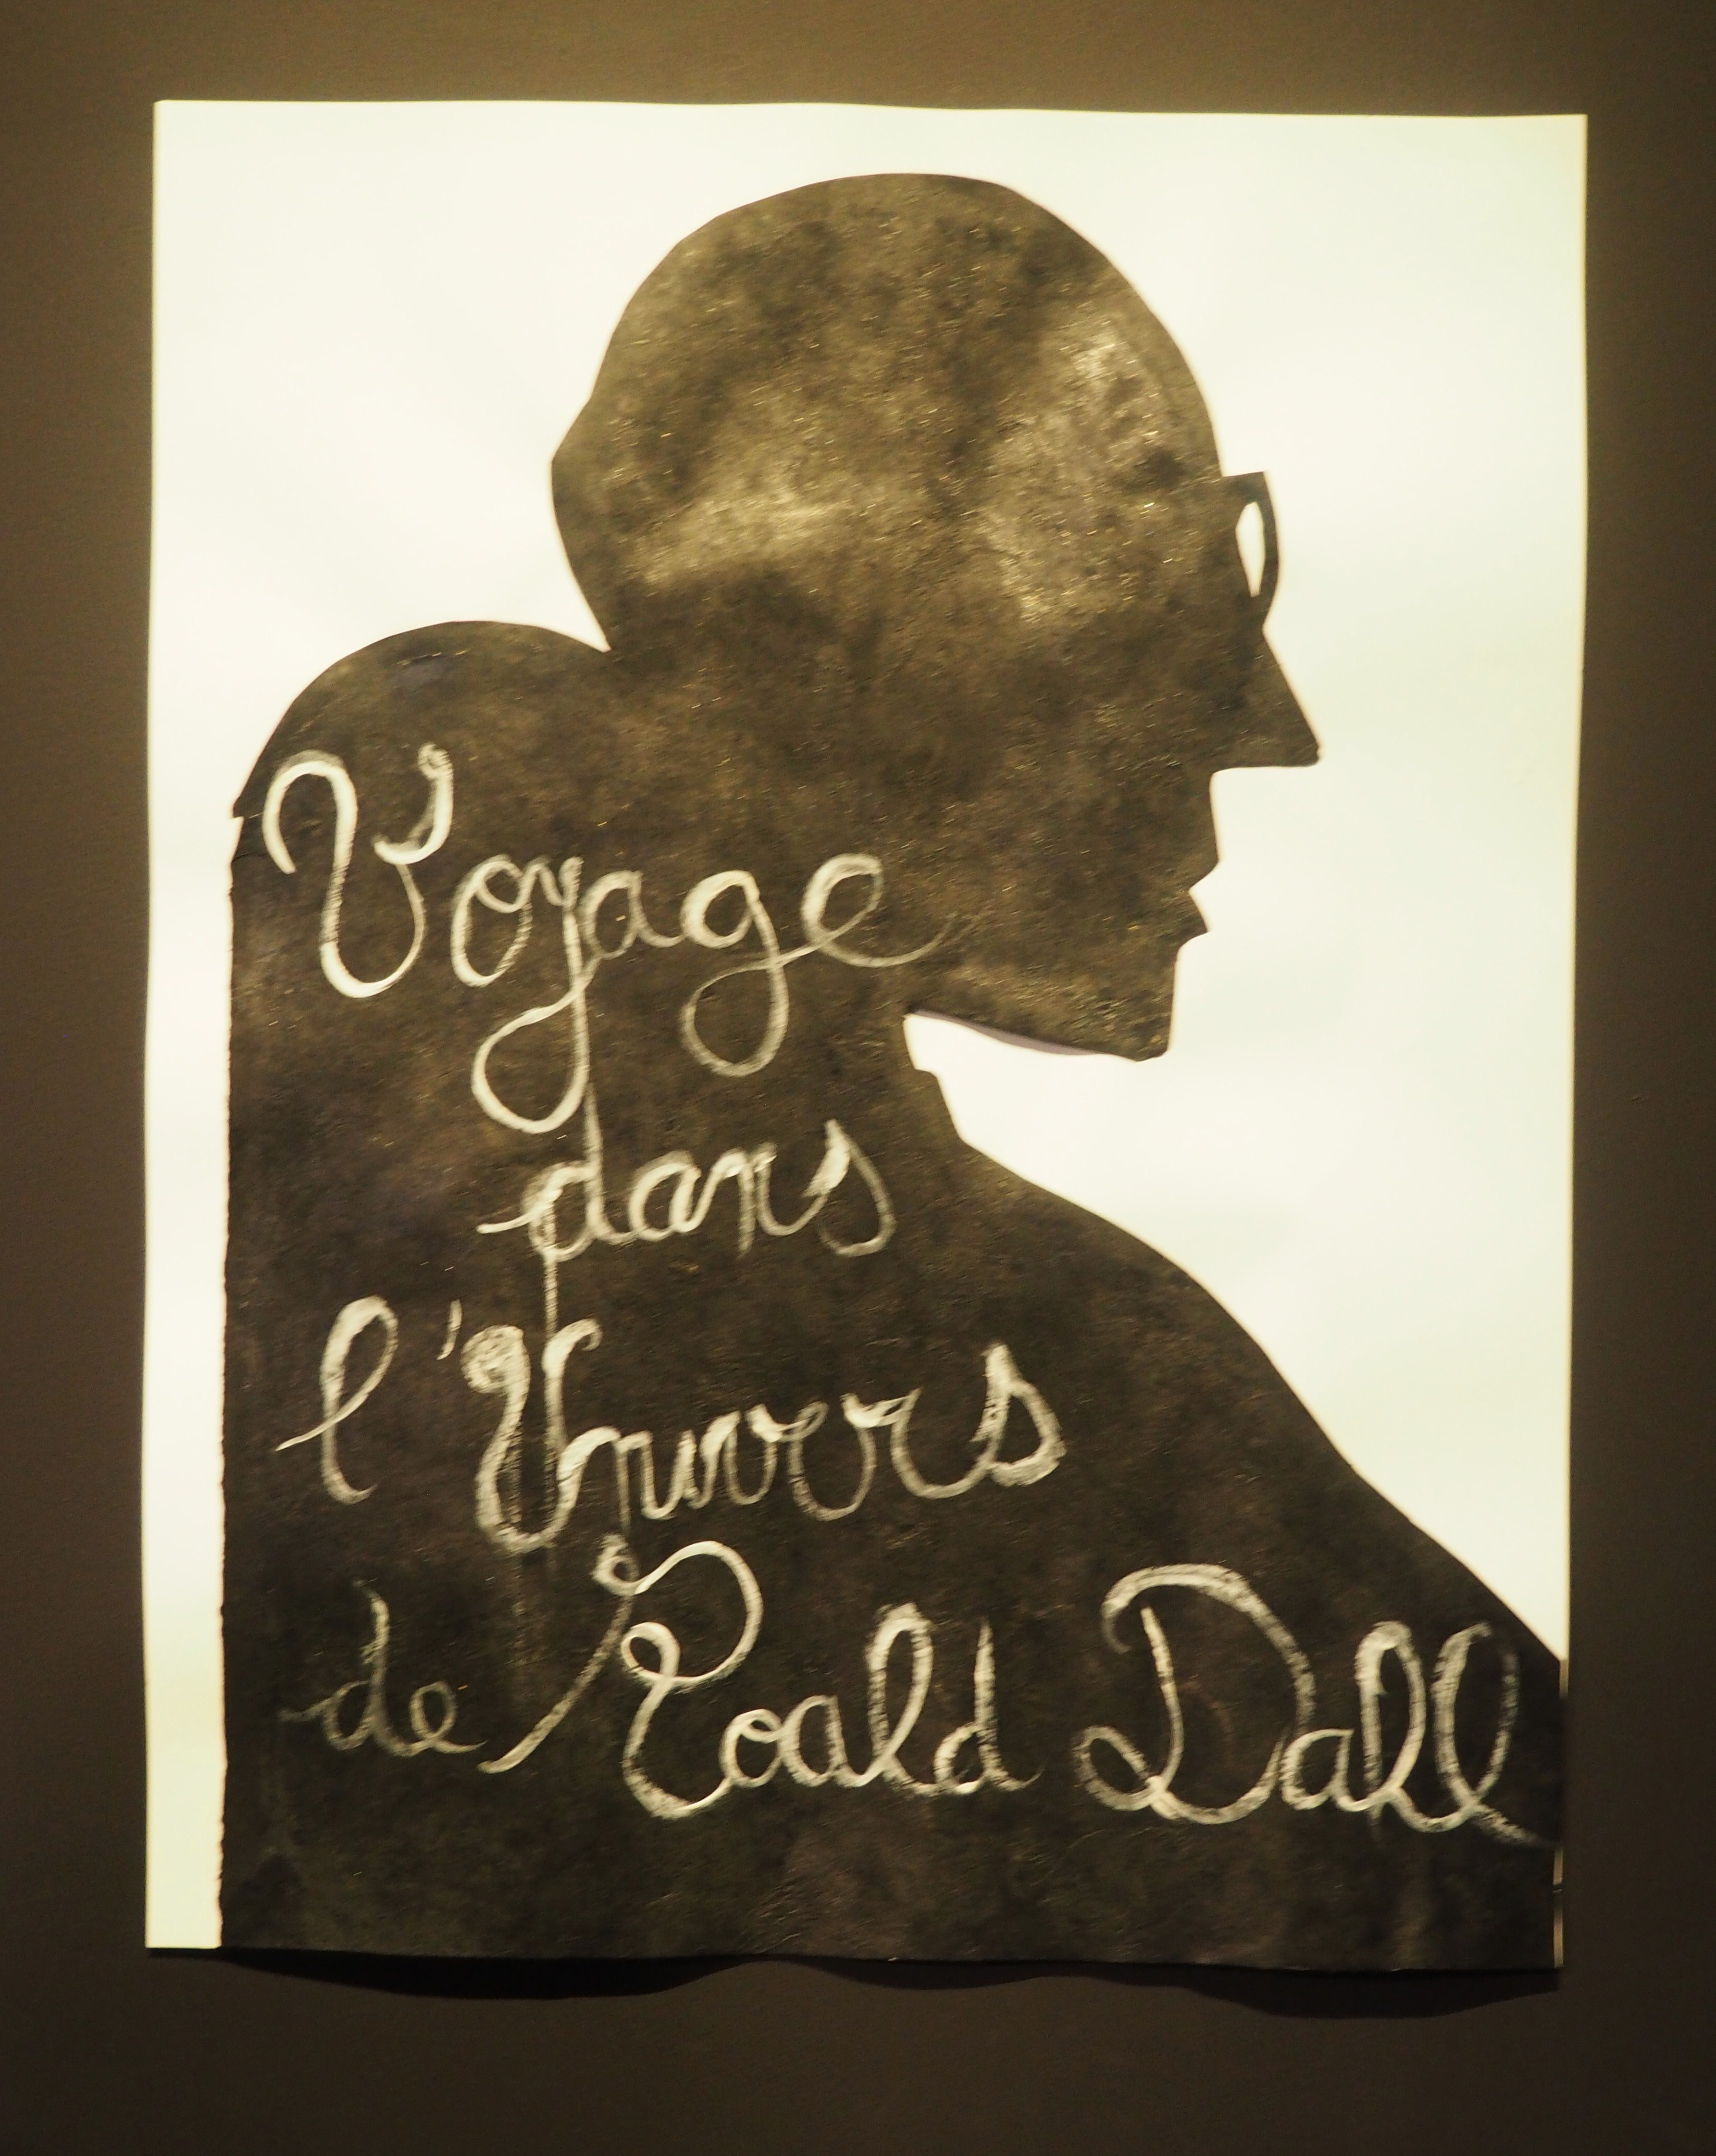 Expo "Voyage dans l’univers de Roald Dahl" Aix en Provence